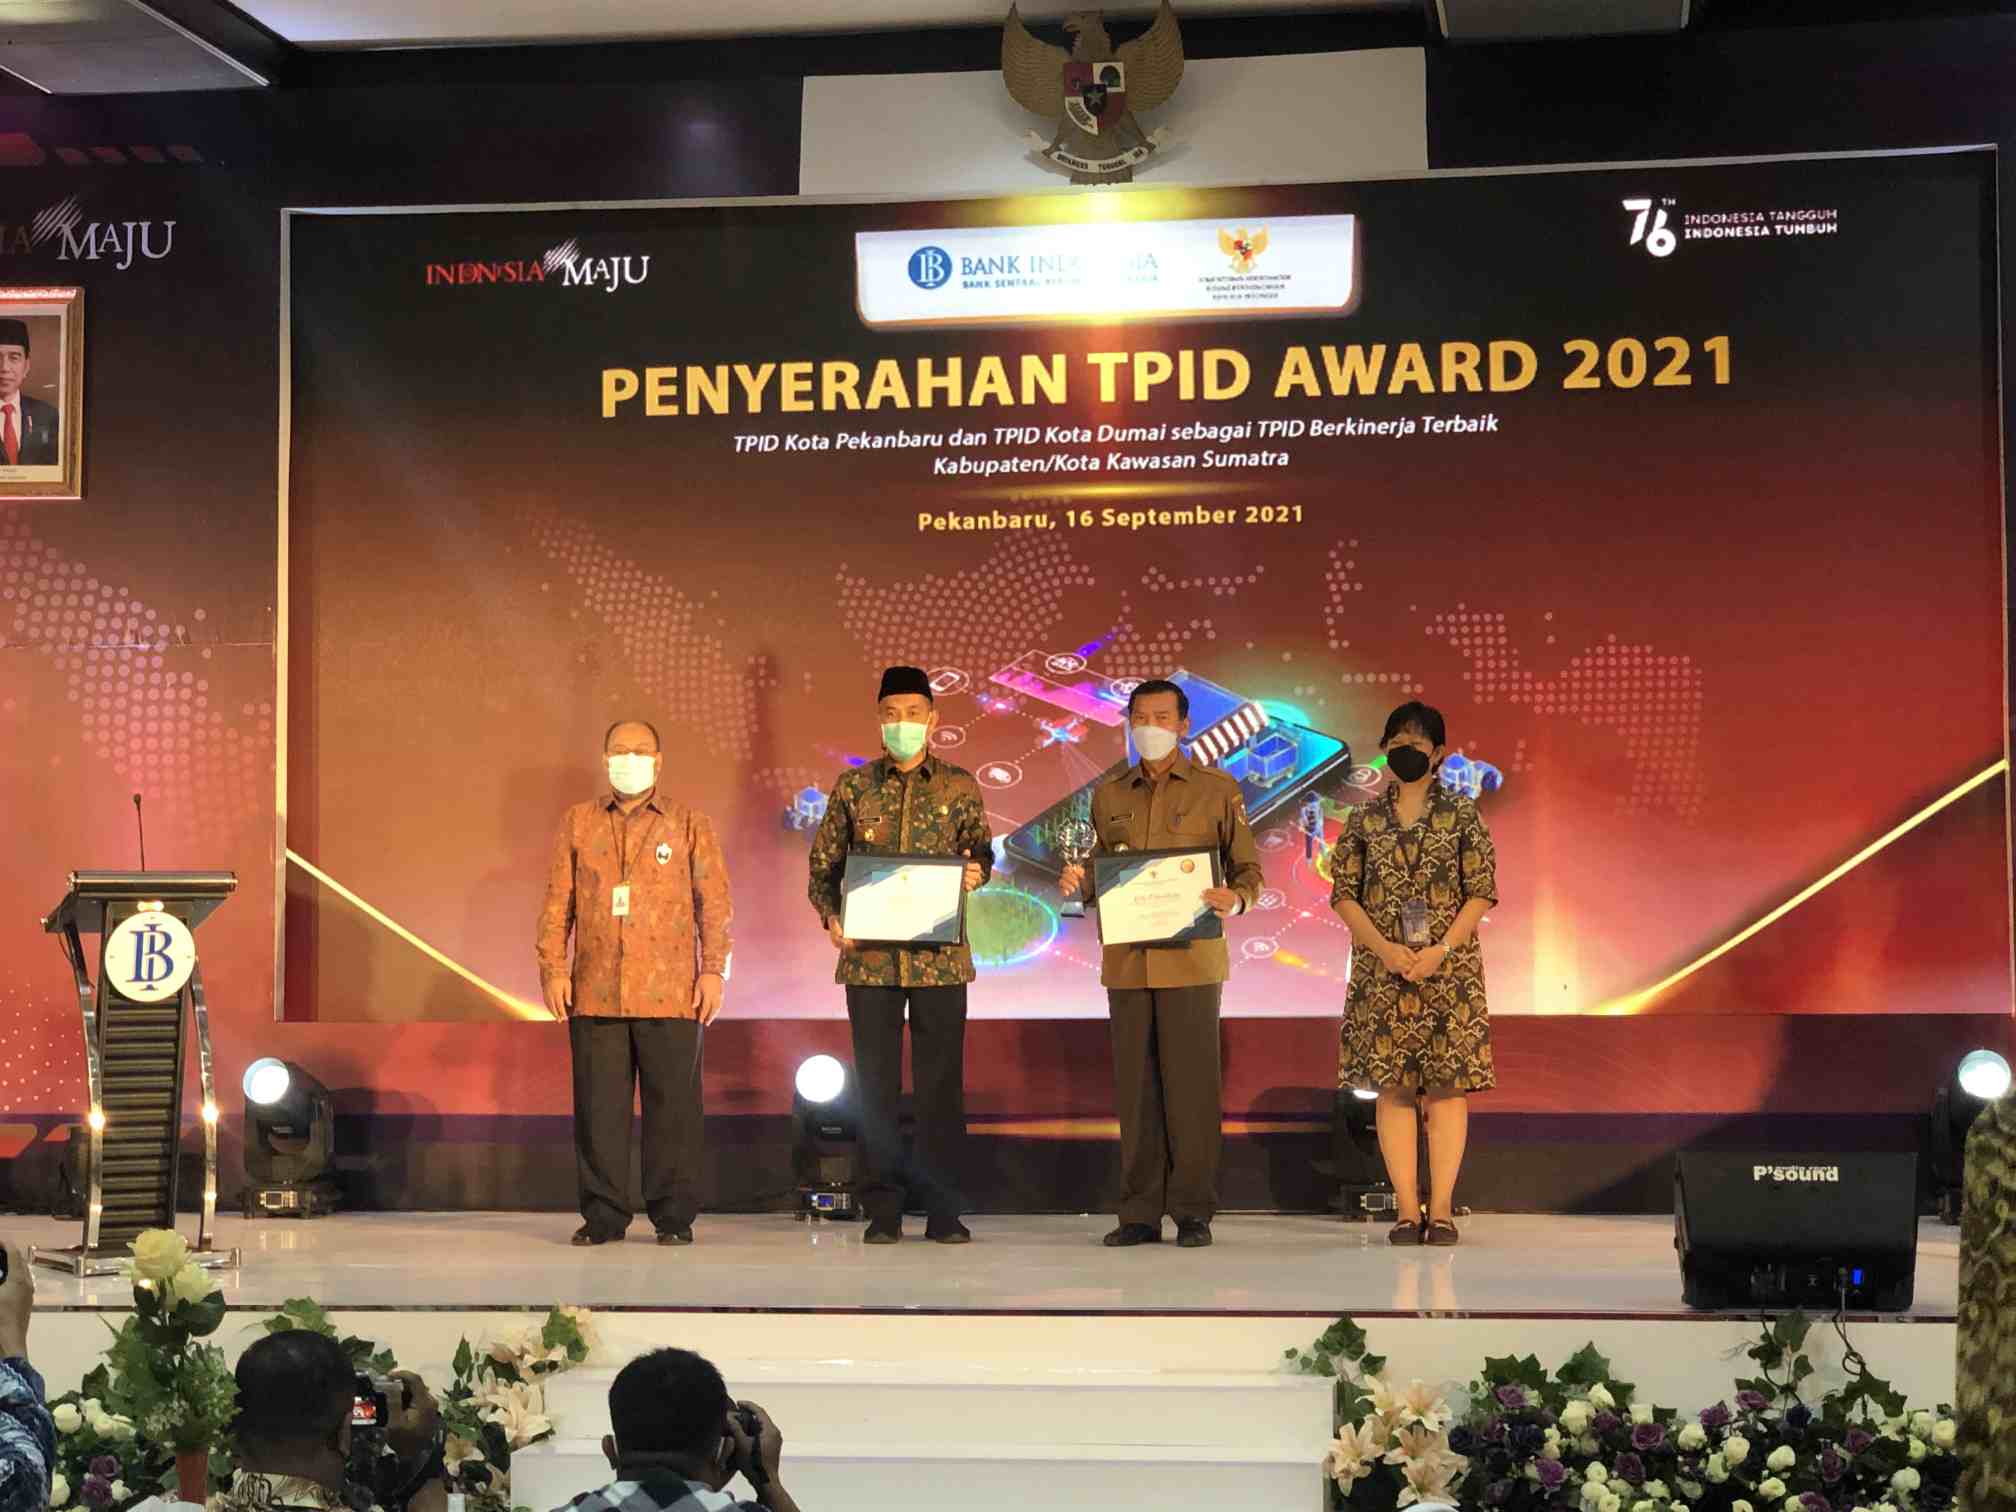 Kota Pekanbaru dan Dumai Terima Penghargaan TPID Award